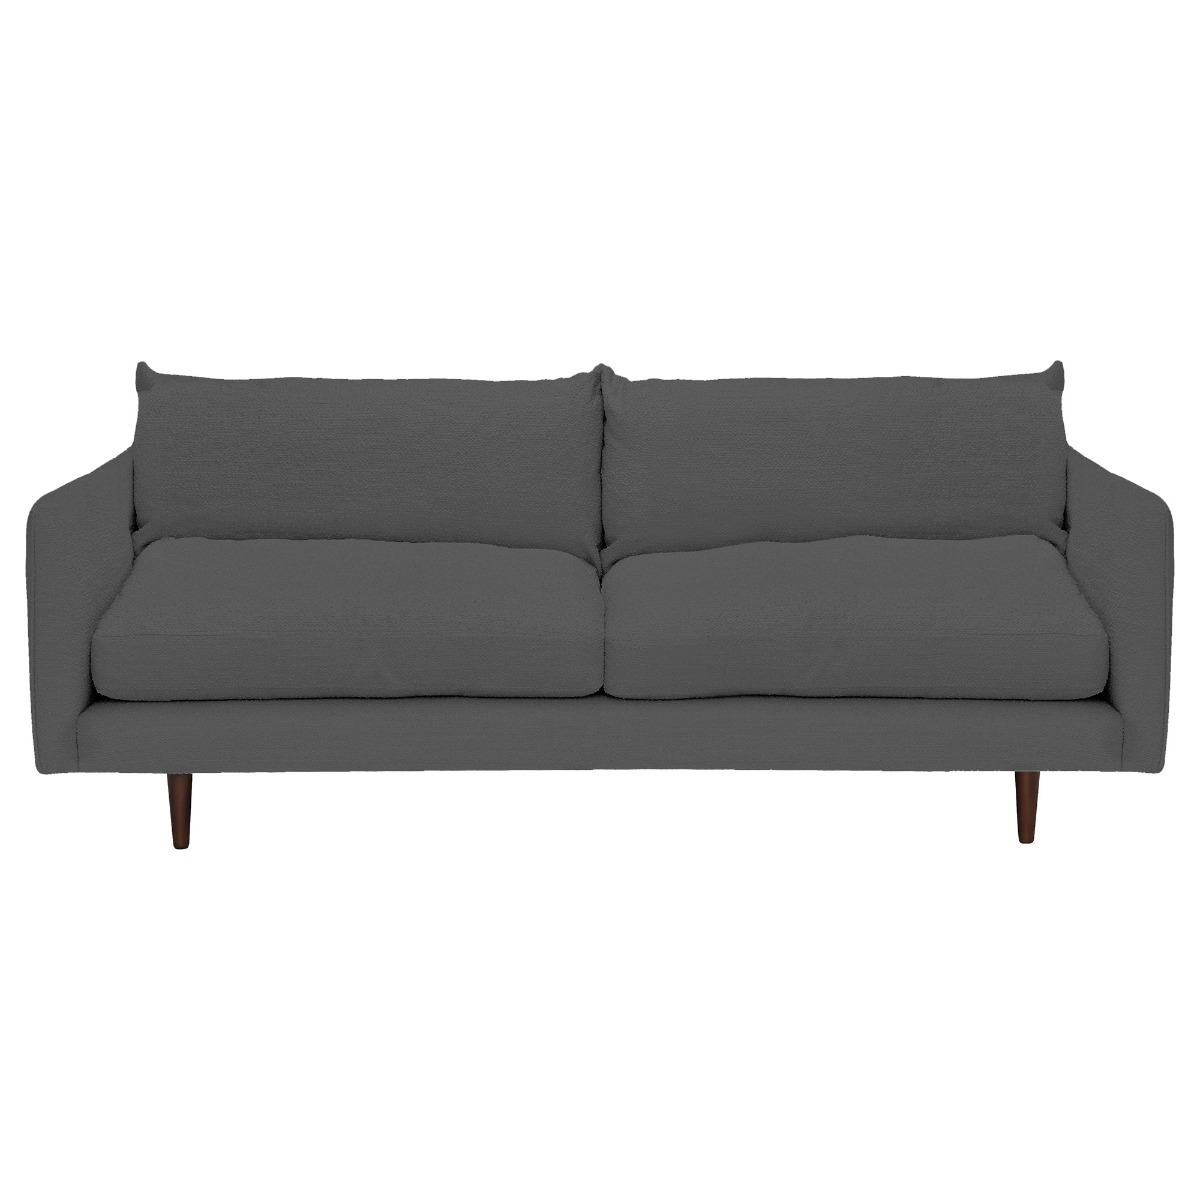 Levico Large Sofa, Grey Fabric - Barker & Stonehouse - image 1